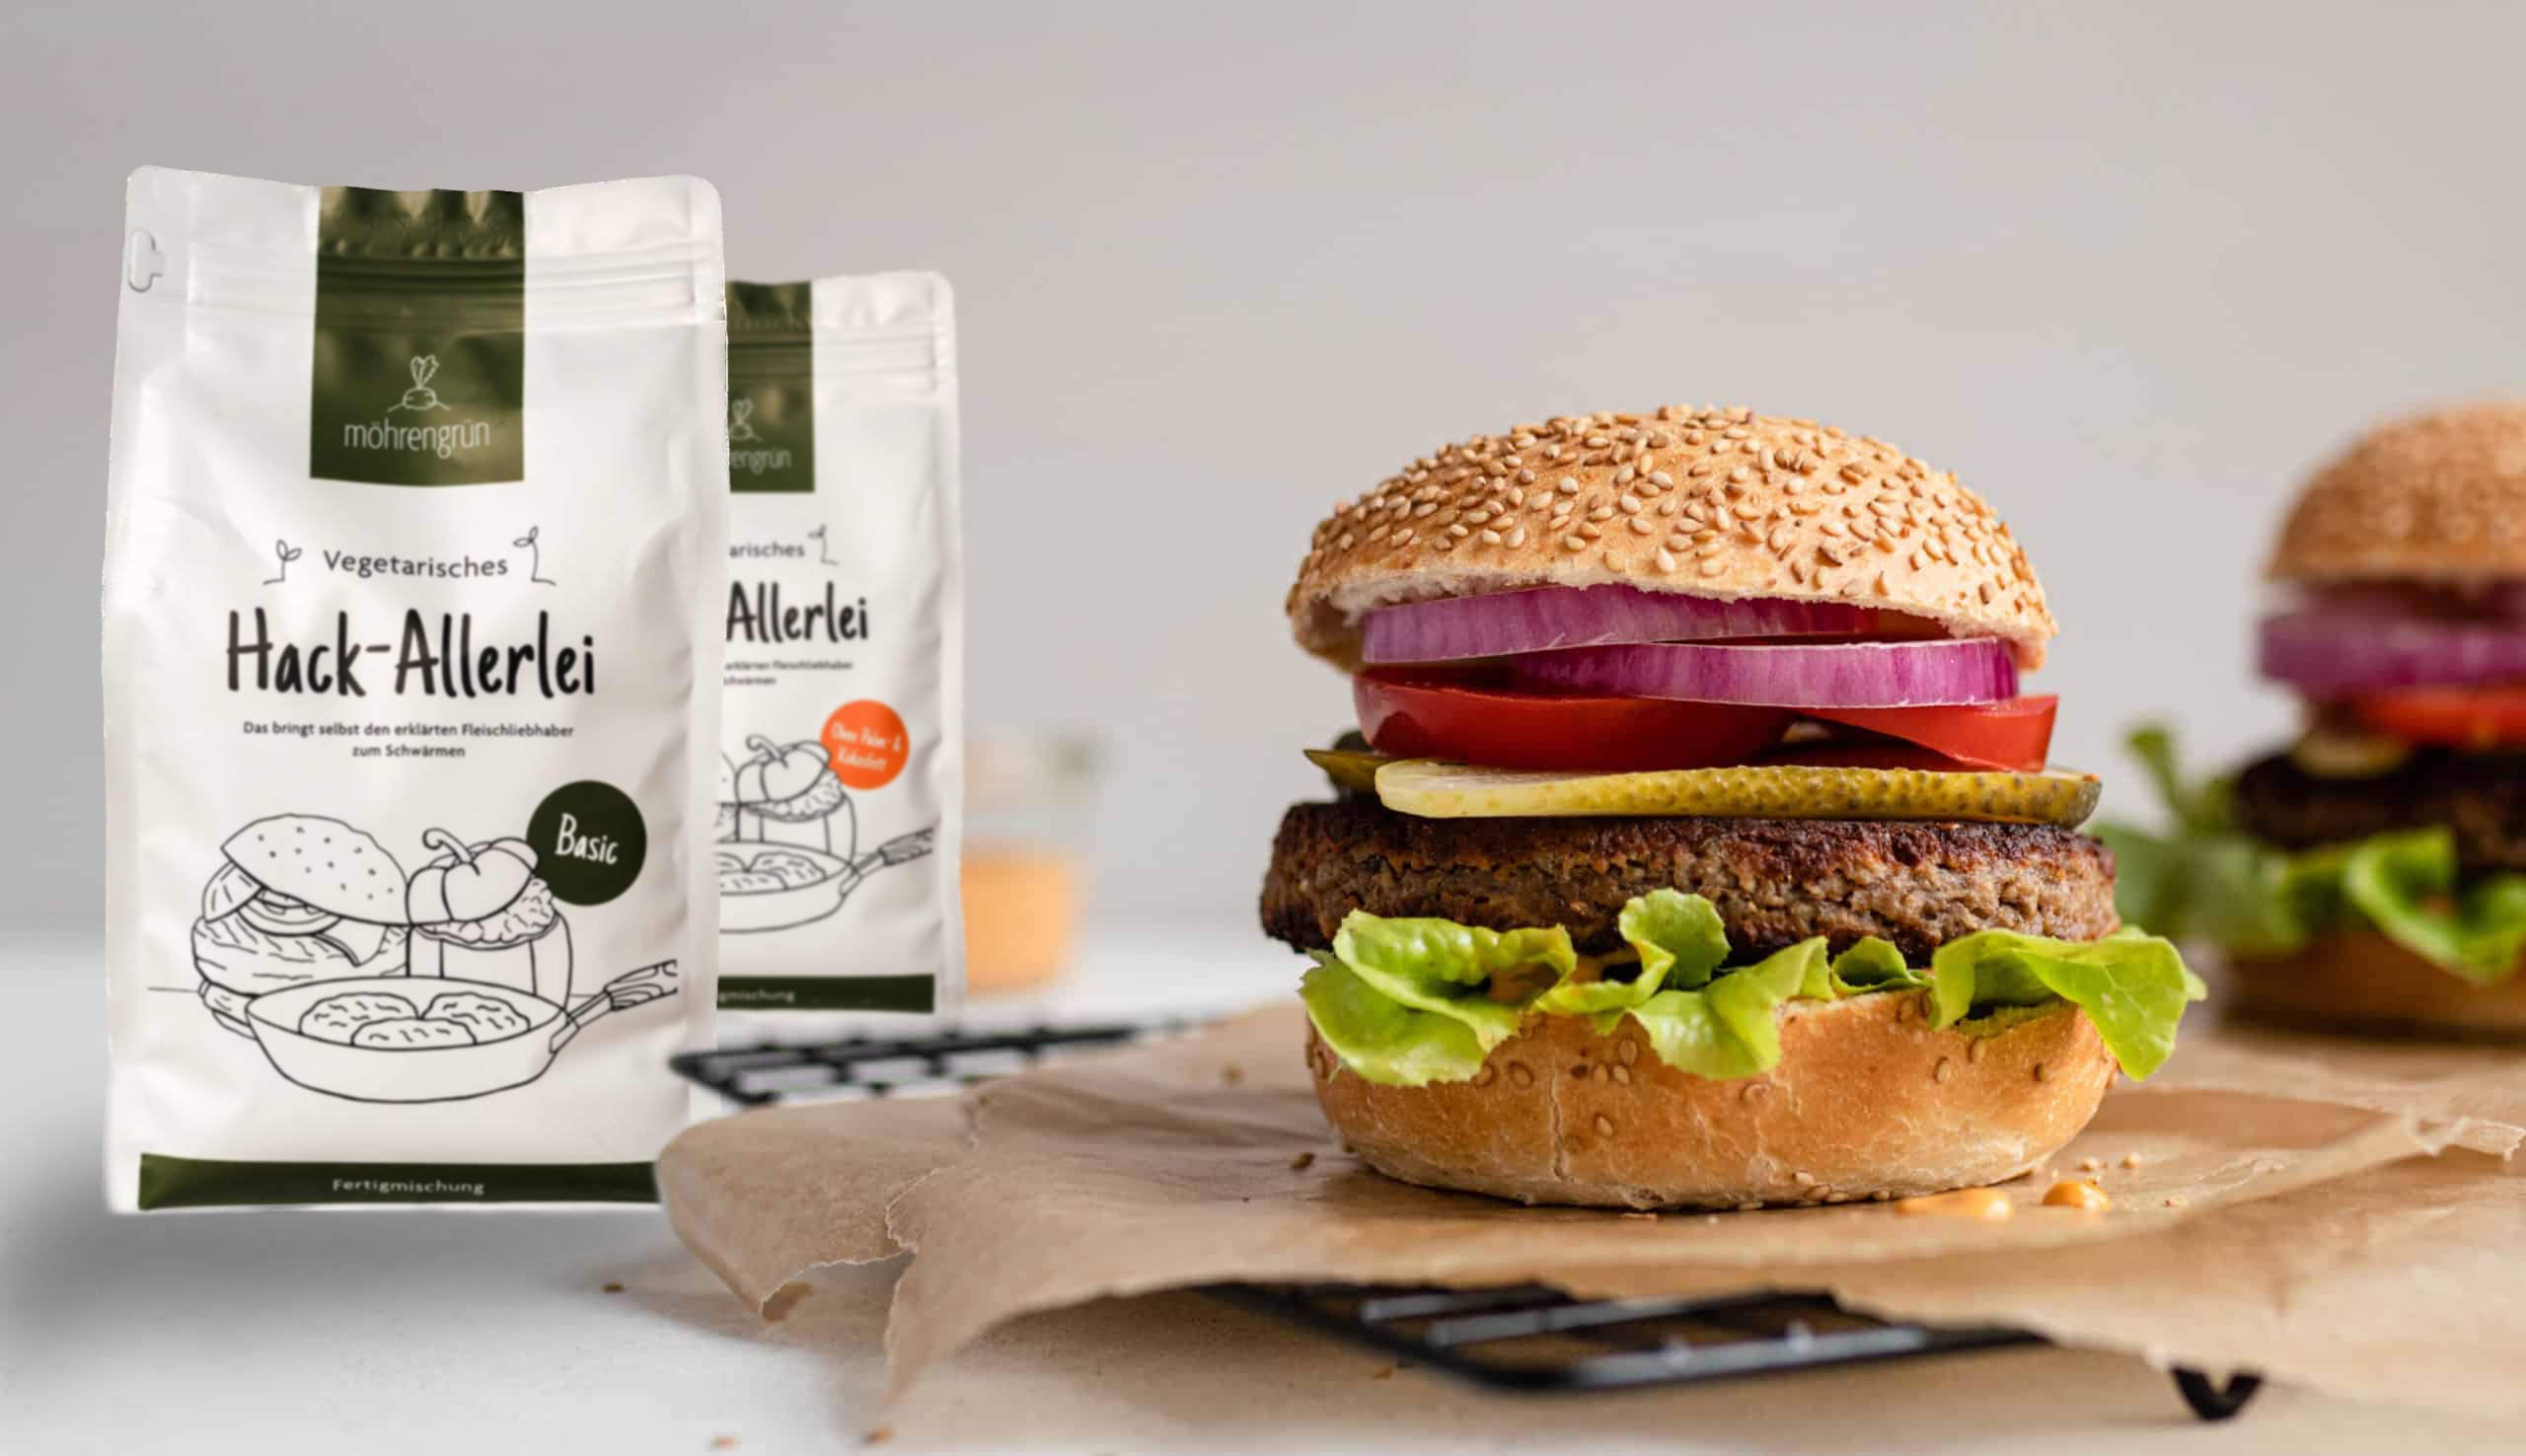 Ein vegetarischer Burger mit Sesambrötchen, Salat, Tomate und Patty wird prominent neben einer Verpackung mit der Aufschrift hack-allerlei der Marke möhrengrün präsentiert.